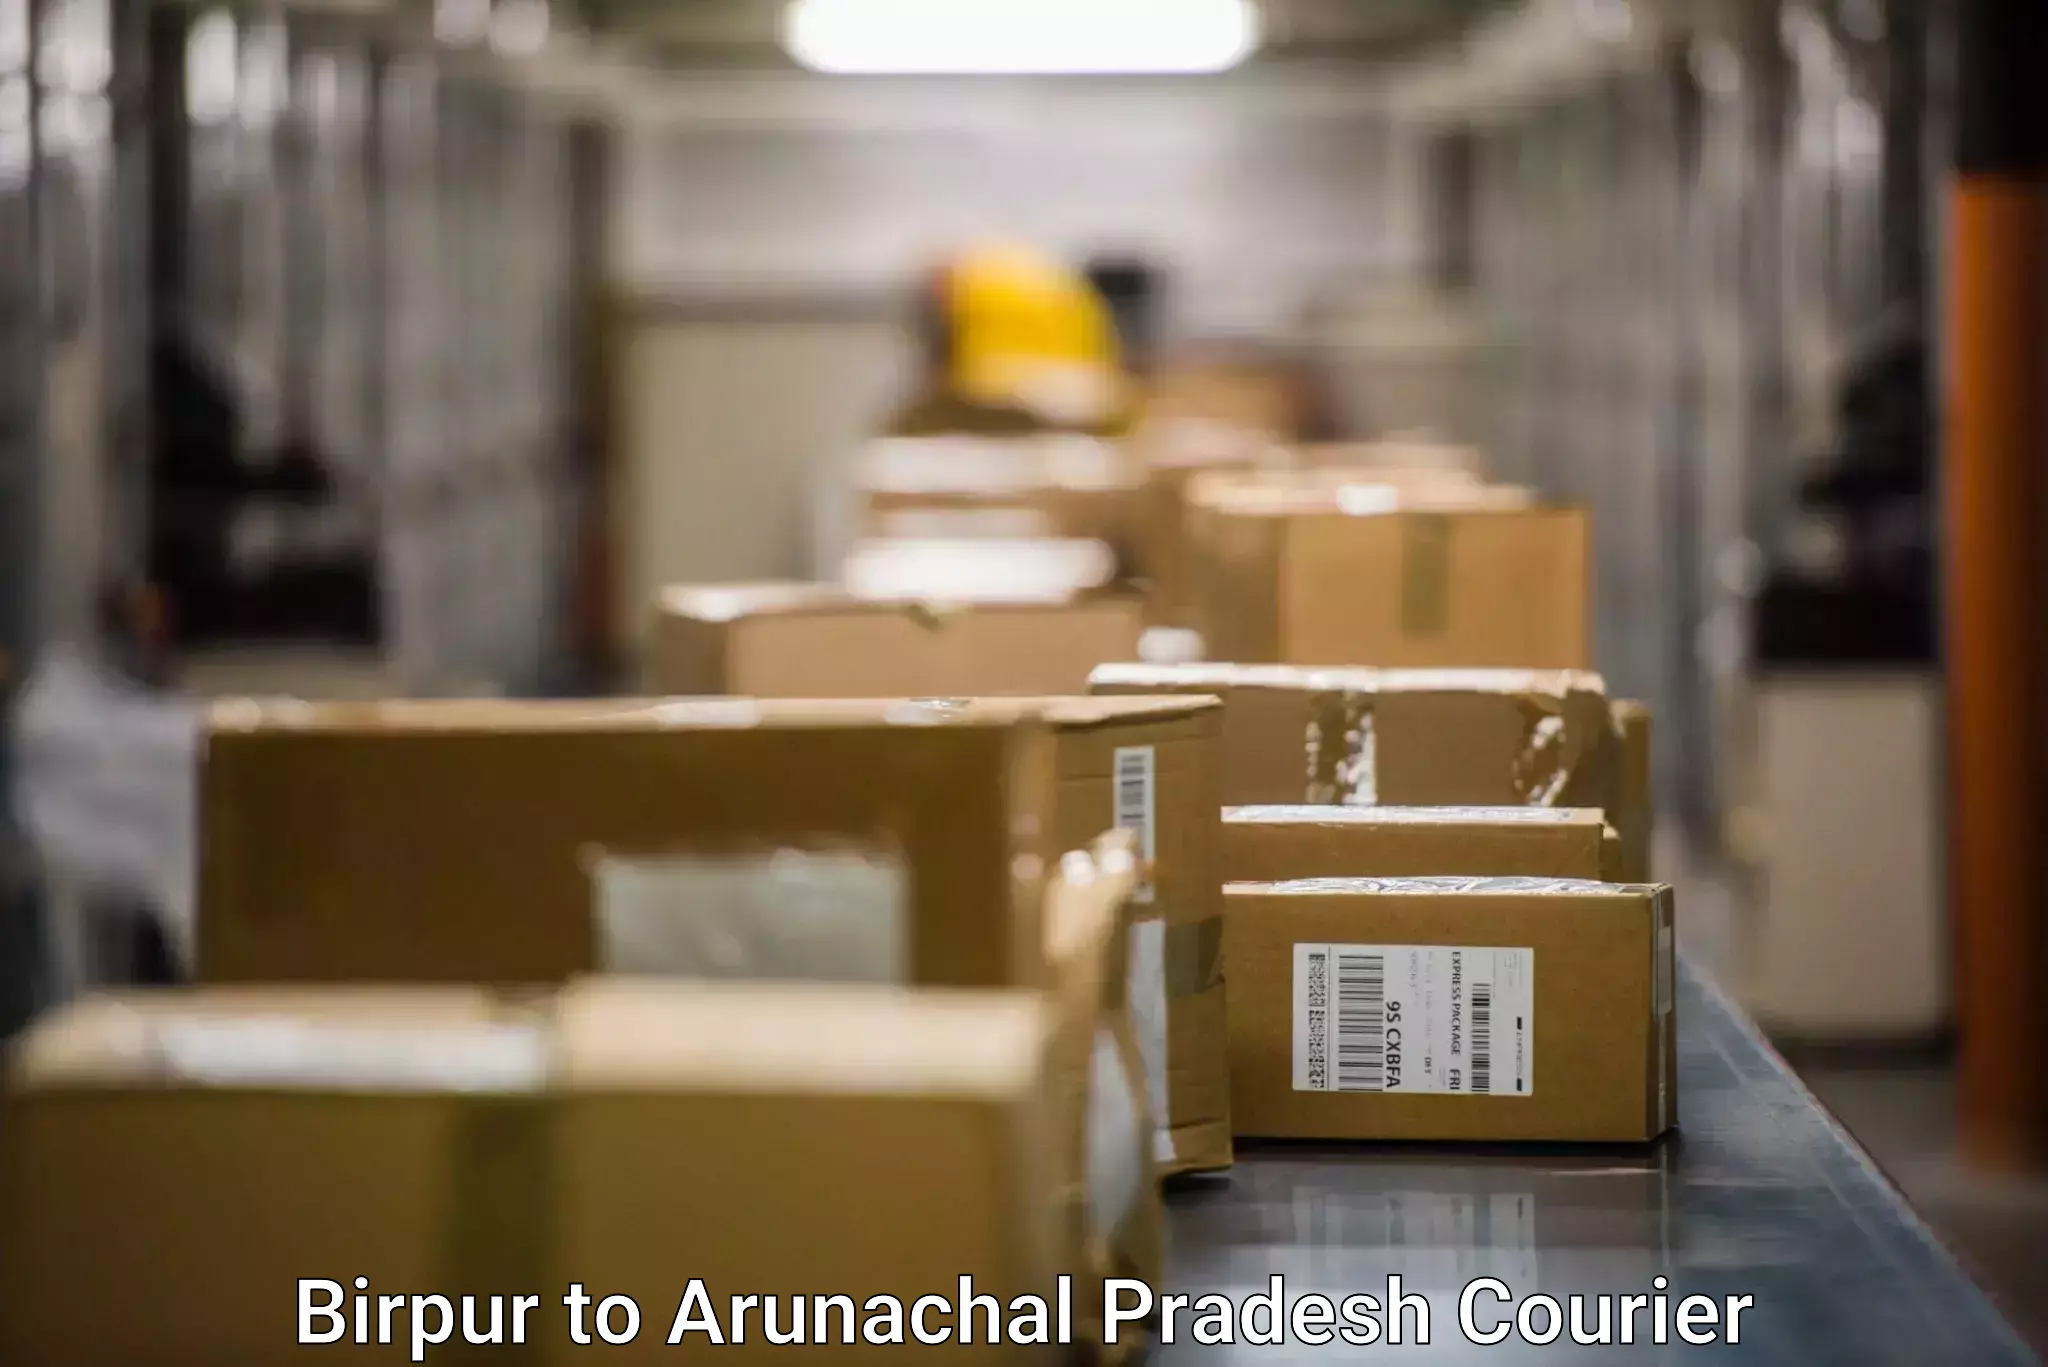 Express logistics service Birpur to Arunachal Pradesh